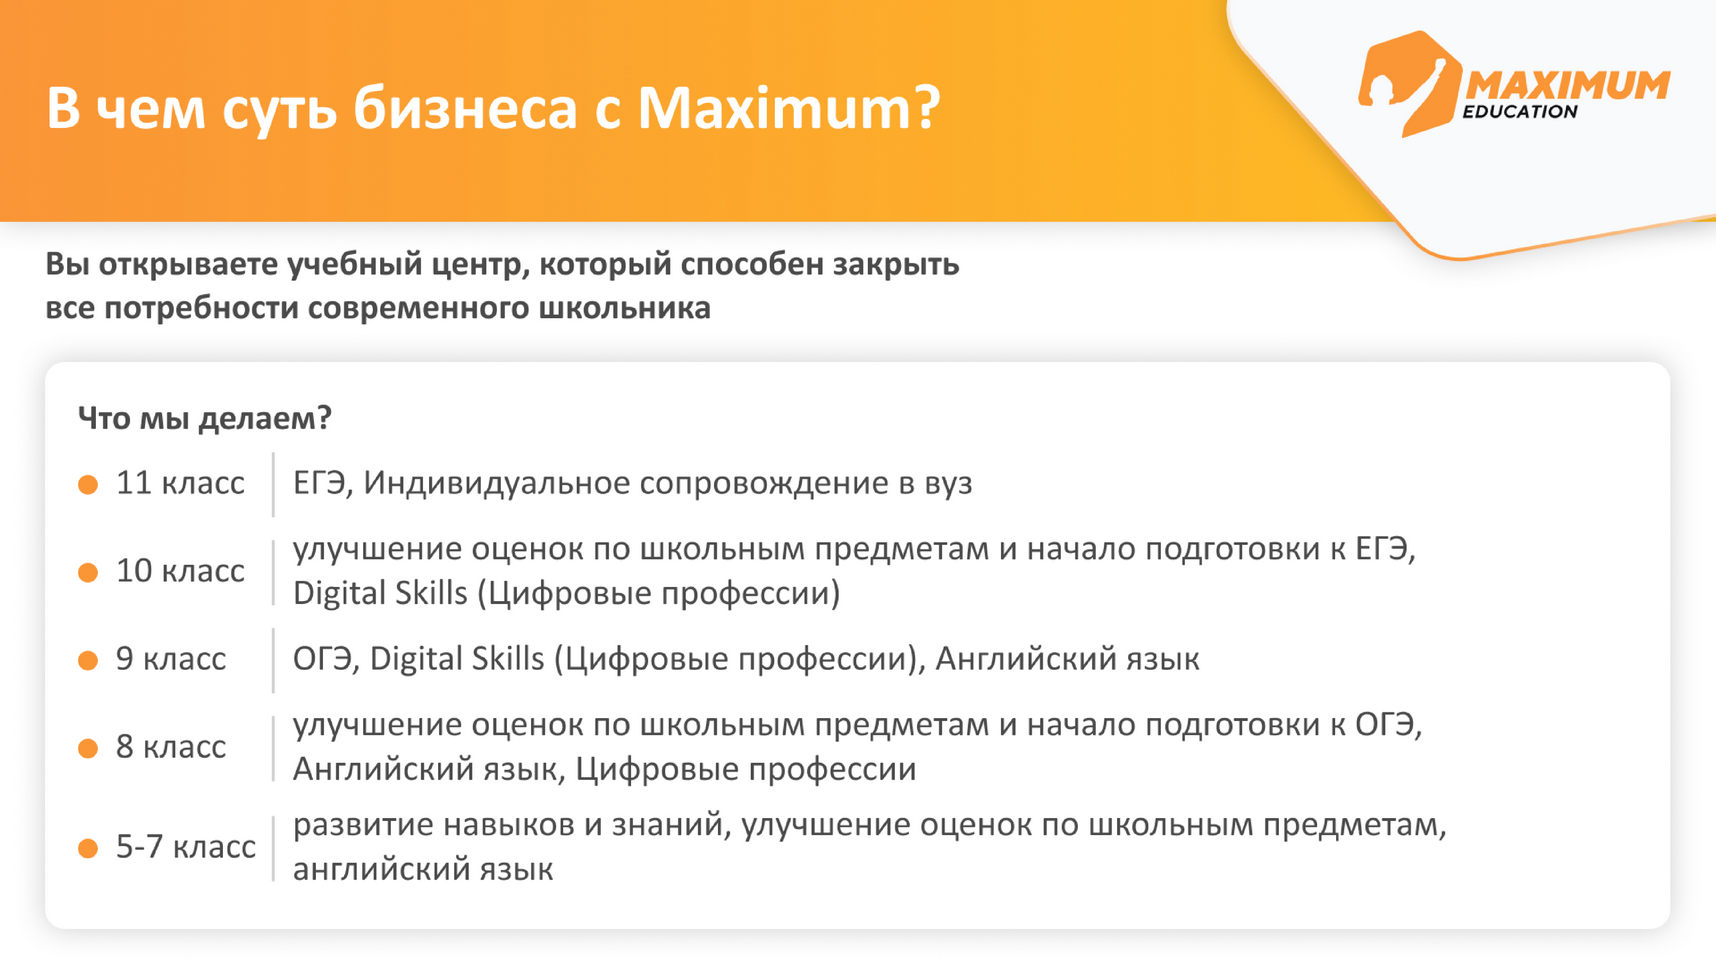 Образовательные программы MAXIMUM Education